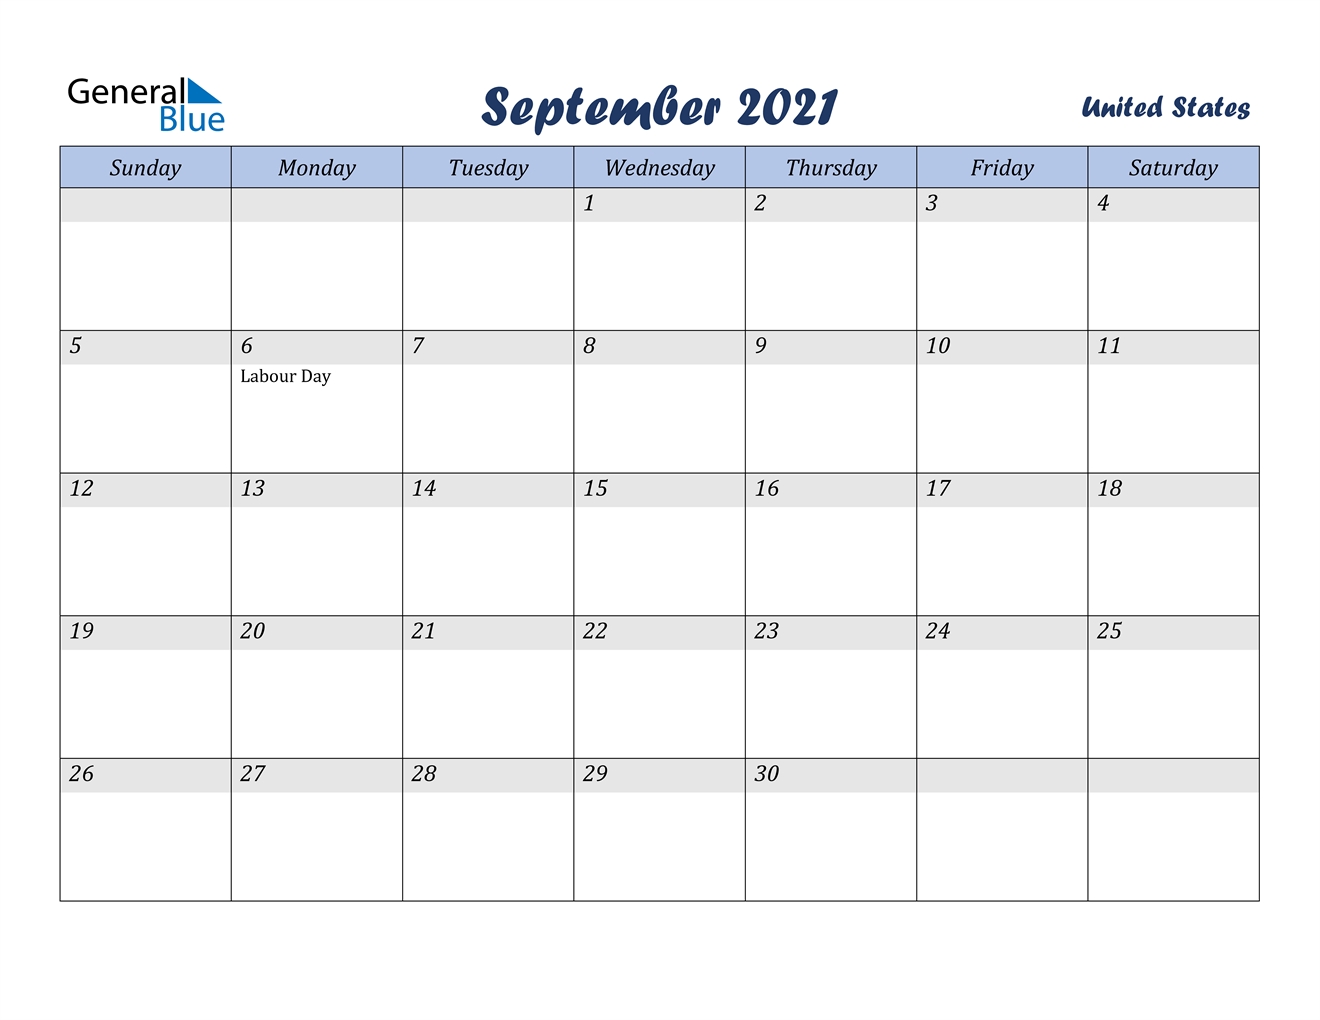 September 2021 Calendar - United States